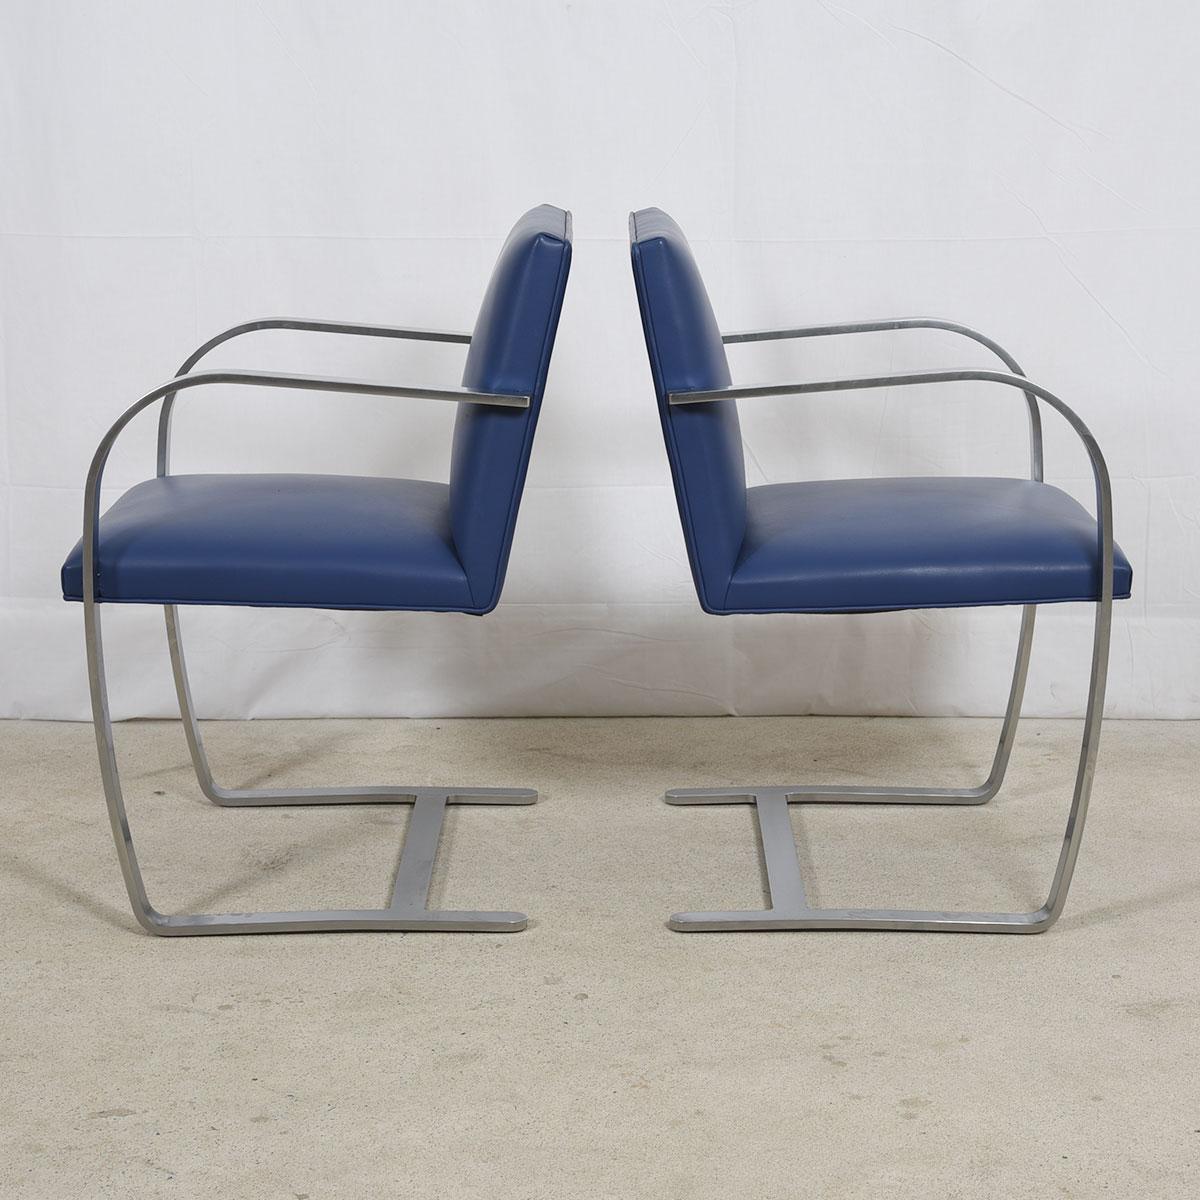 Der 1930 von Mies van der Rohe für sein berühmtes Tugendhat-Haus in Brünn (Tschechische Republik) entworfene Brünner Stuhl spiegelt die bahnbrechende Einfachheit seiner ursprünglichen Umgebung wider. Der Stuhl, eine Ikone des Designs des 20.